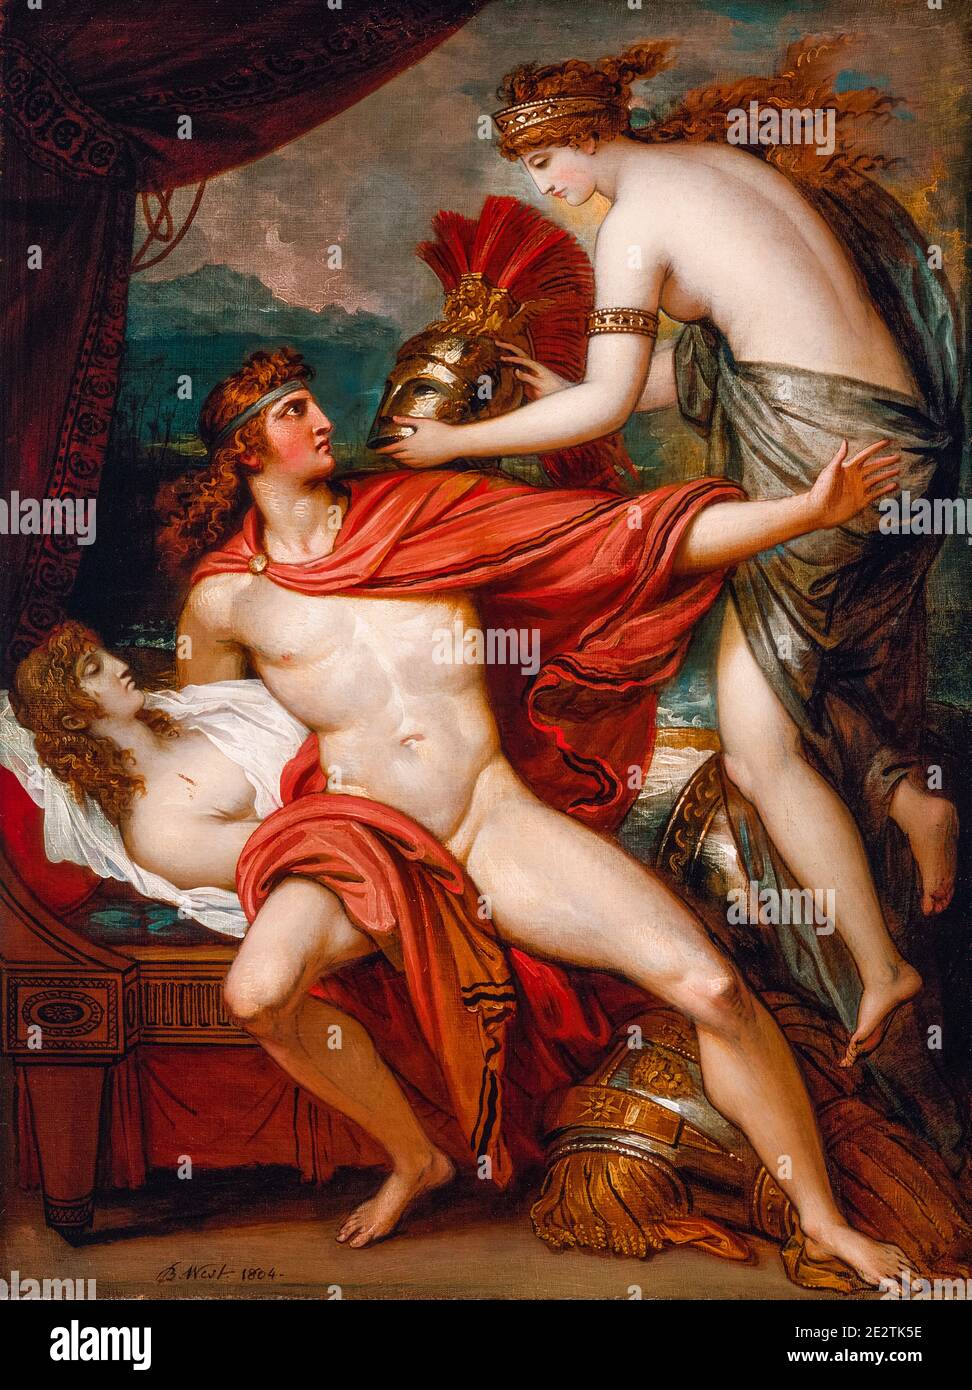 Thetis amener l'Armure à Achille, peinture de Benjamin West, 1804 Banque D'Images